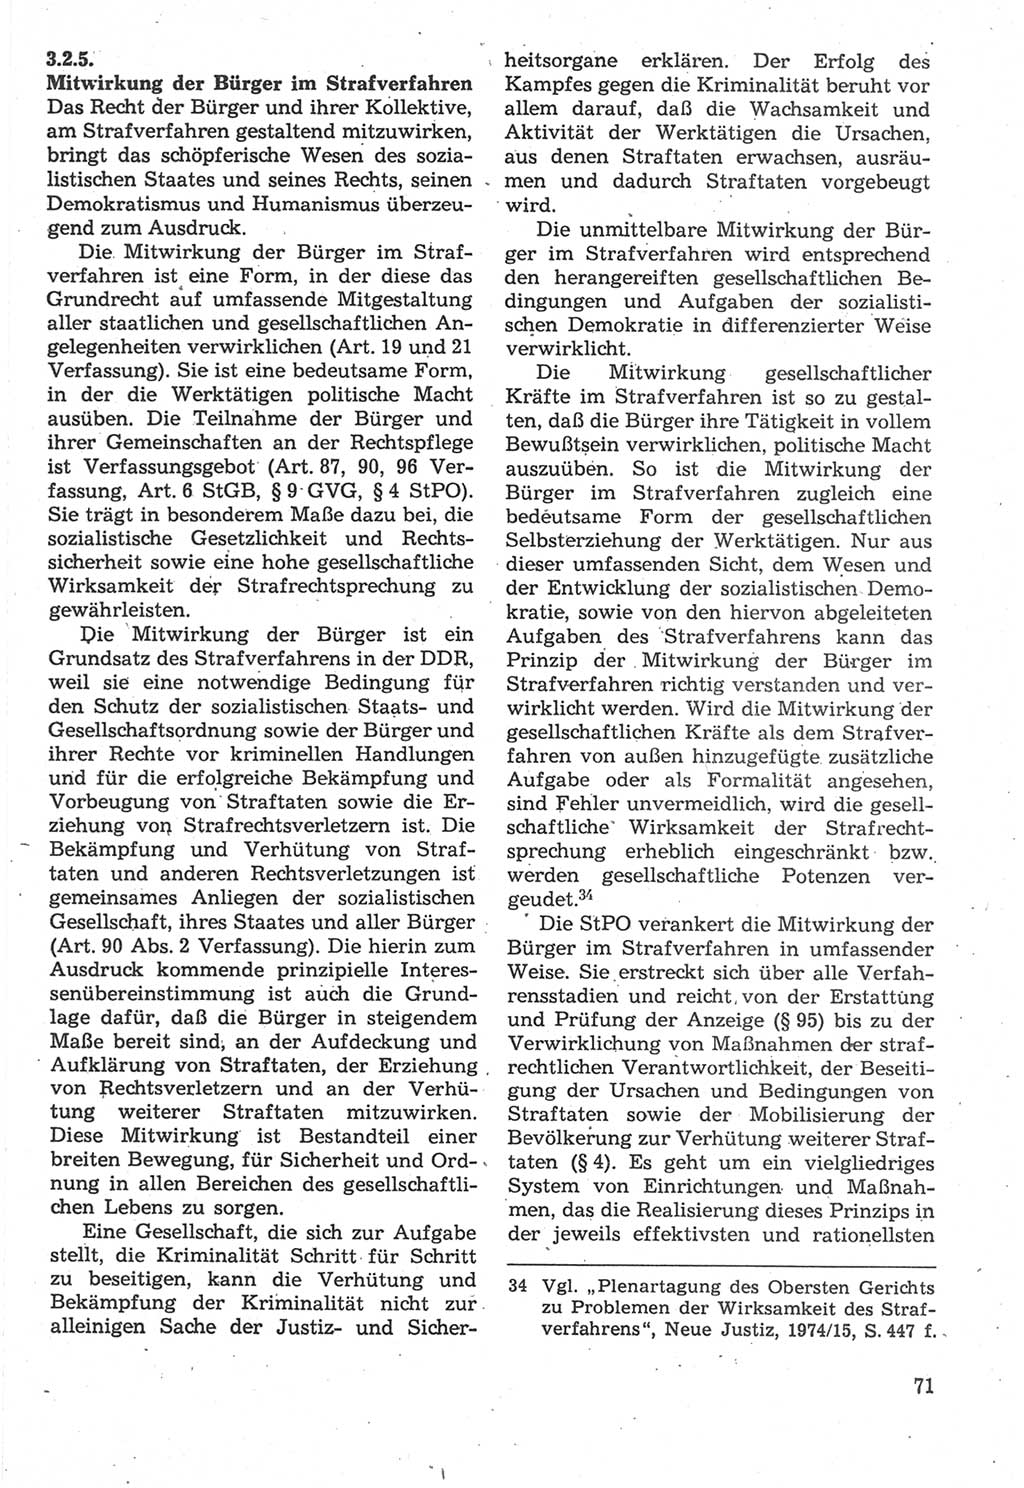 Strafverfahrensrecht [Deutsche Demokratische Republik (DDR)], Lehrbuch 1987, Seite 71 (Strafverf.-R. DDR Lb. 1987, S. 71)